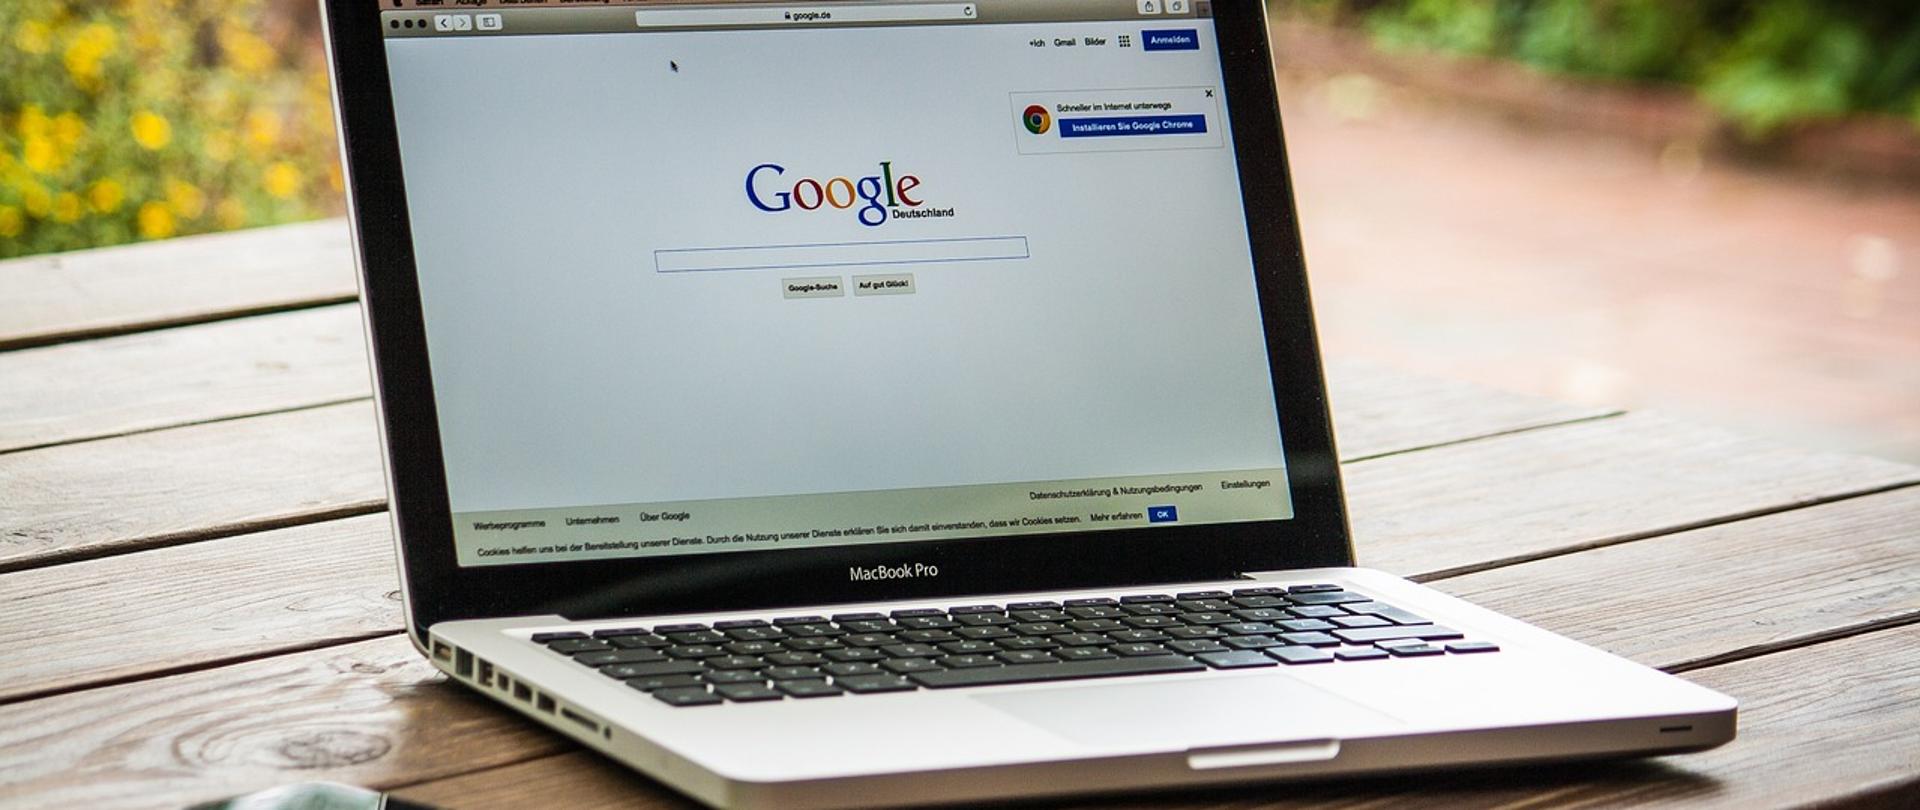 Zdjęcie laptopa na drewnianym stole z otworzonym oknem wyszukiwarki Google. Po lewej stronie smartphone